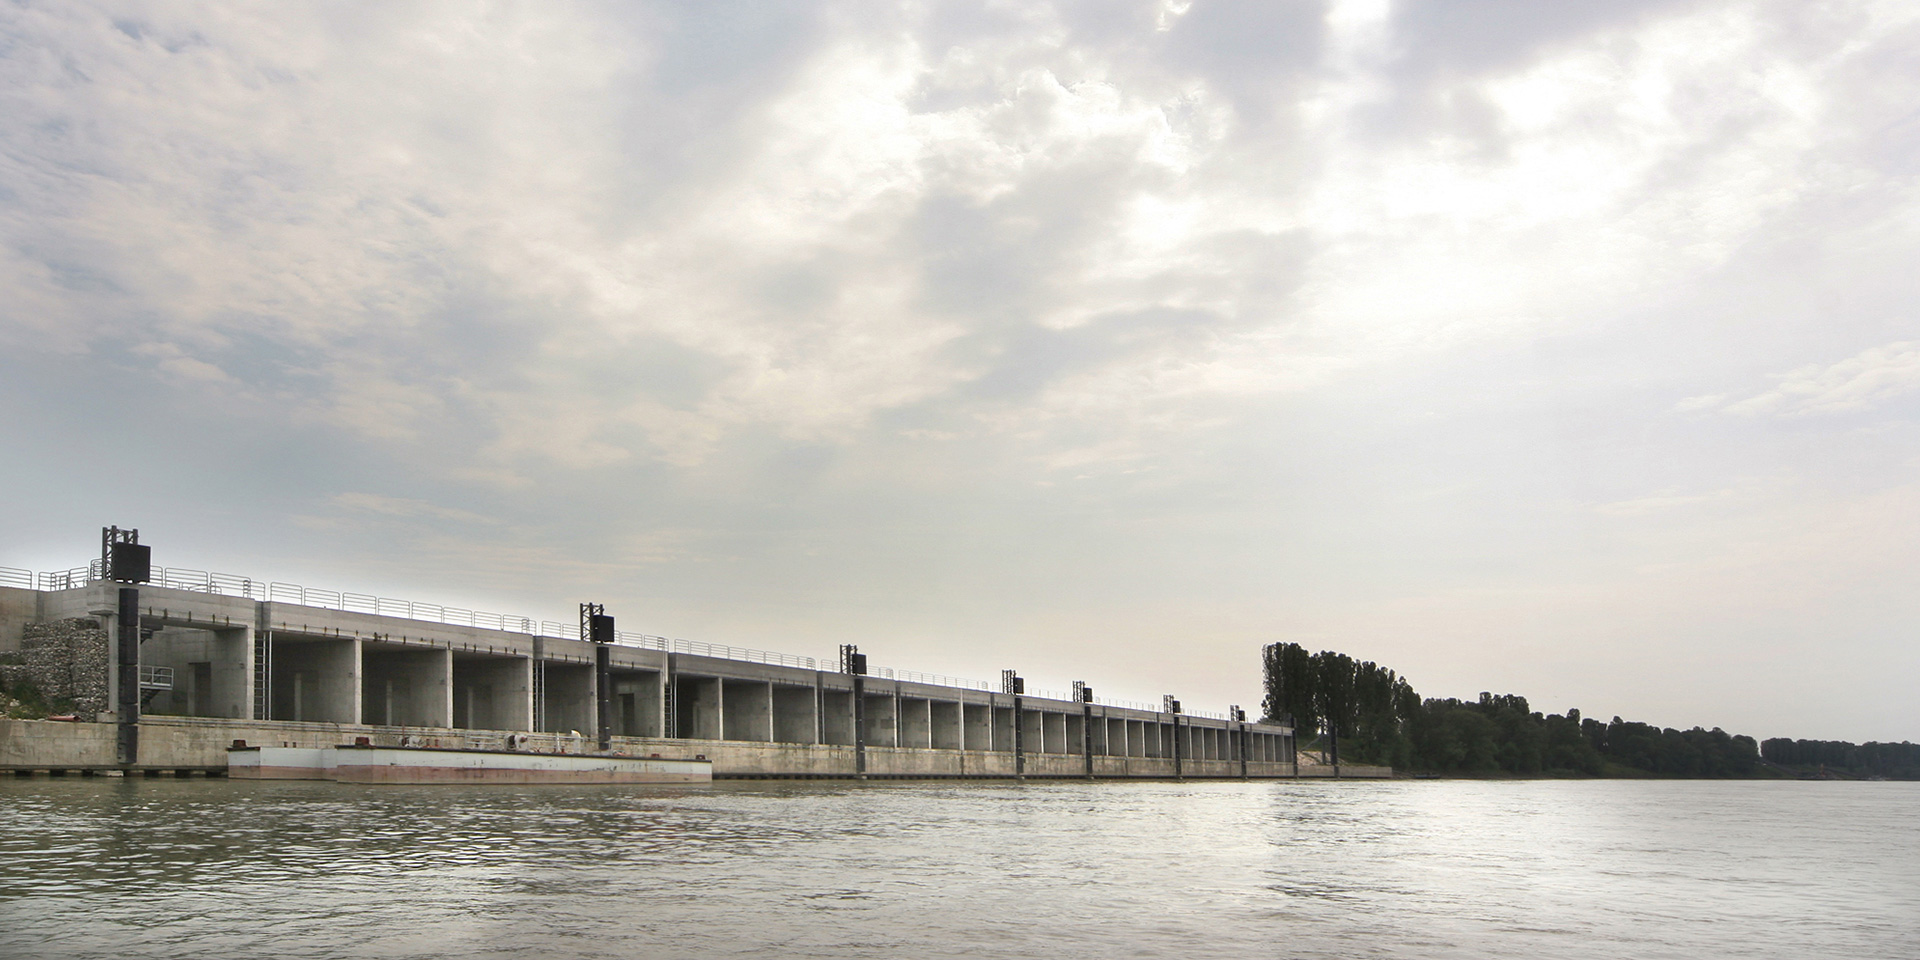 TEC – Terminal idroviario dell’Emilia Centrale, Binini Partners, Società di architettura e ingegneria